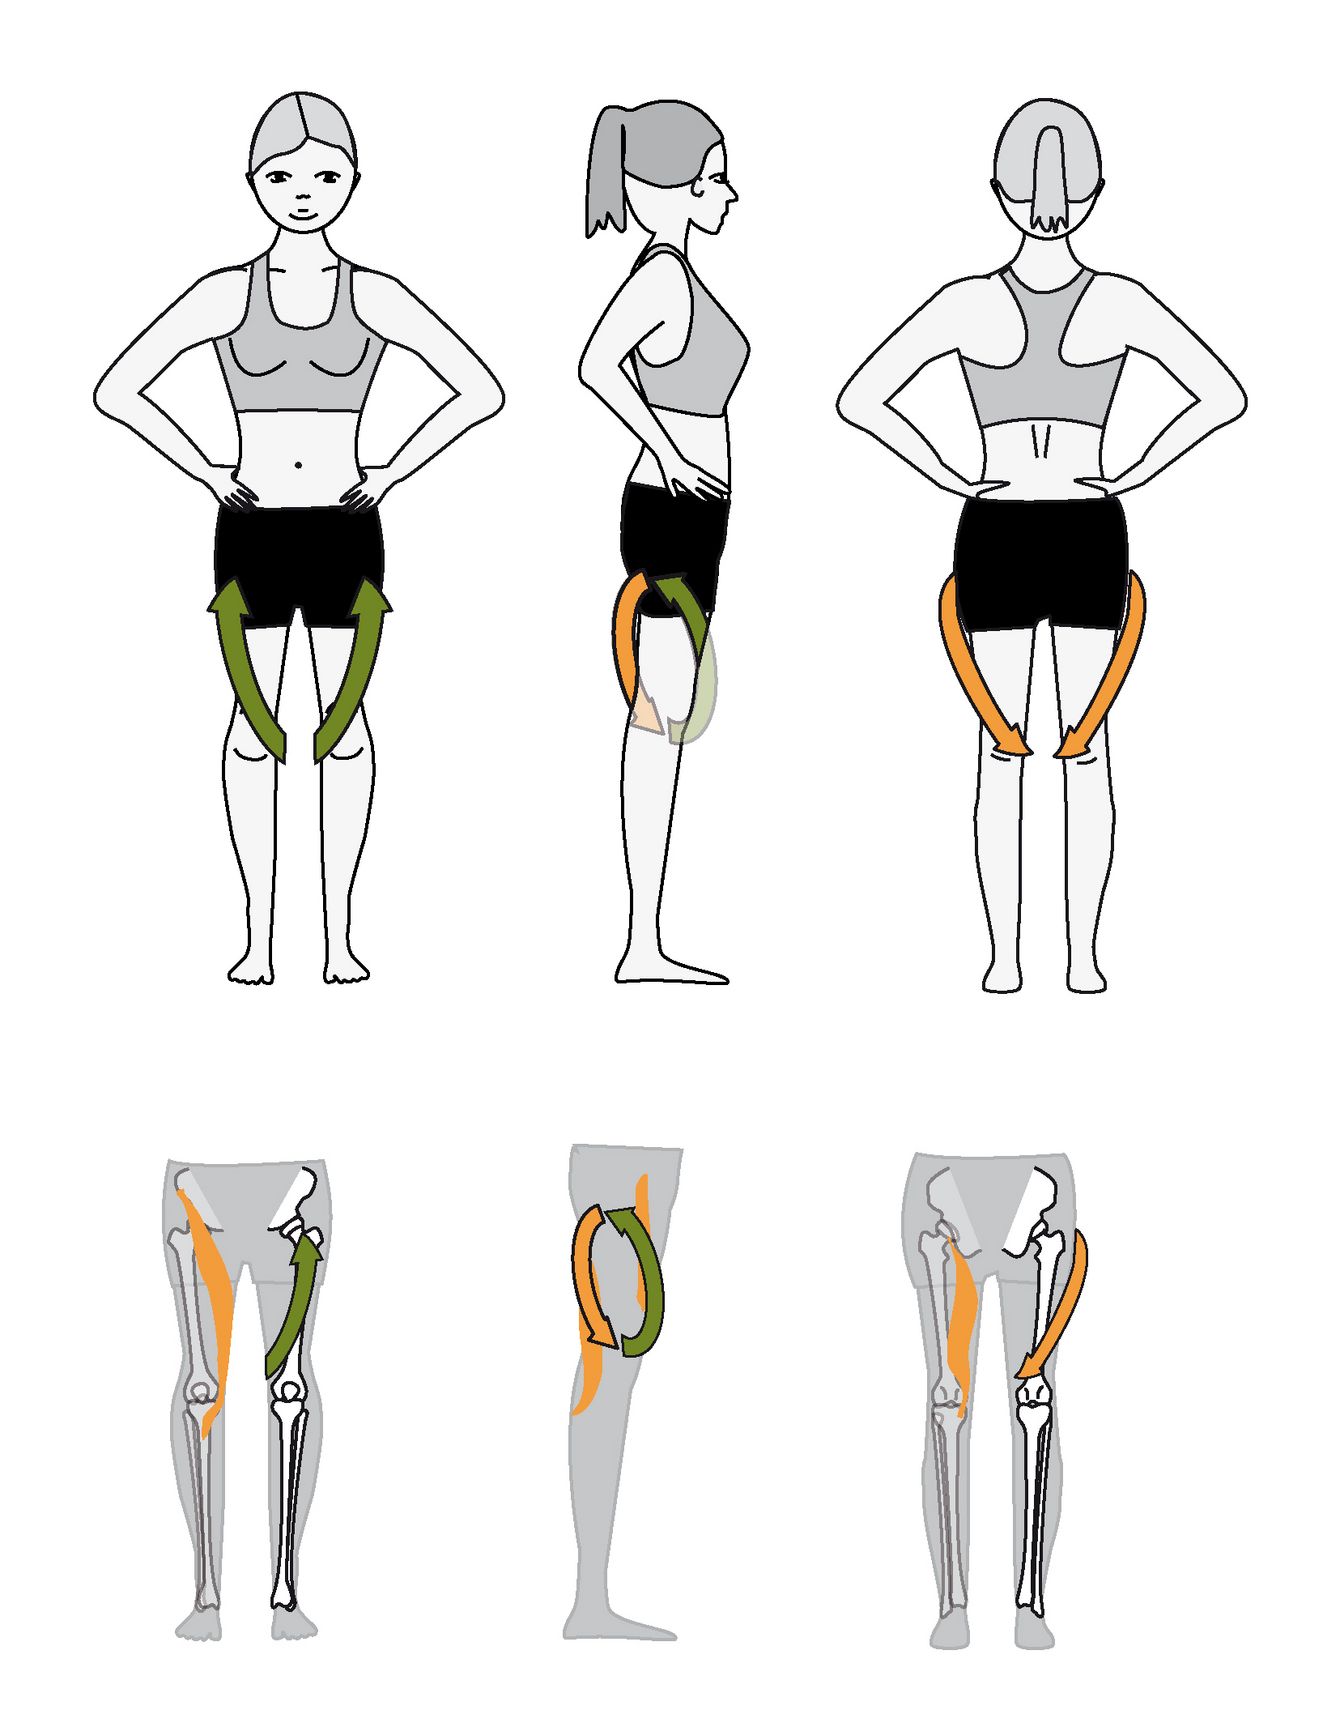 Das Oberschenkel Bandhalign® bringt den Oberschenkel in eine leicht außenrotierende Vorspannung relativ zum Unterschenkel (Tibia) und Becken. Zudem bringt es das Knie- und das Hüftgelenk jeweils in eine Flexions-Aktivierung. Damit balanciert es Hüftgelenk und Kniegelenk und gleicht den Druck auf die jeweiligen Gelenkknorpel aus.